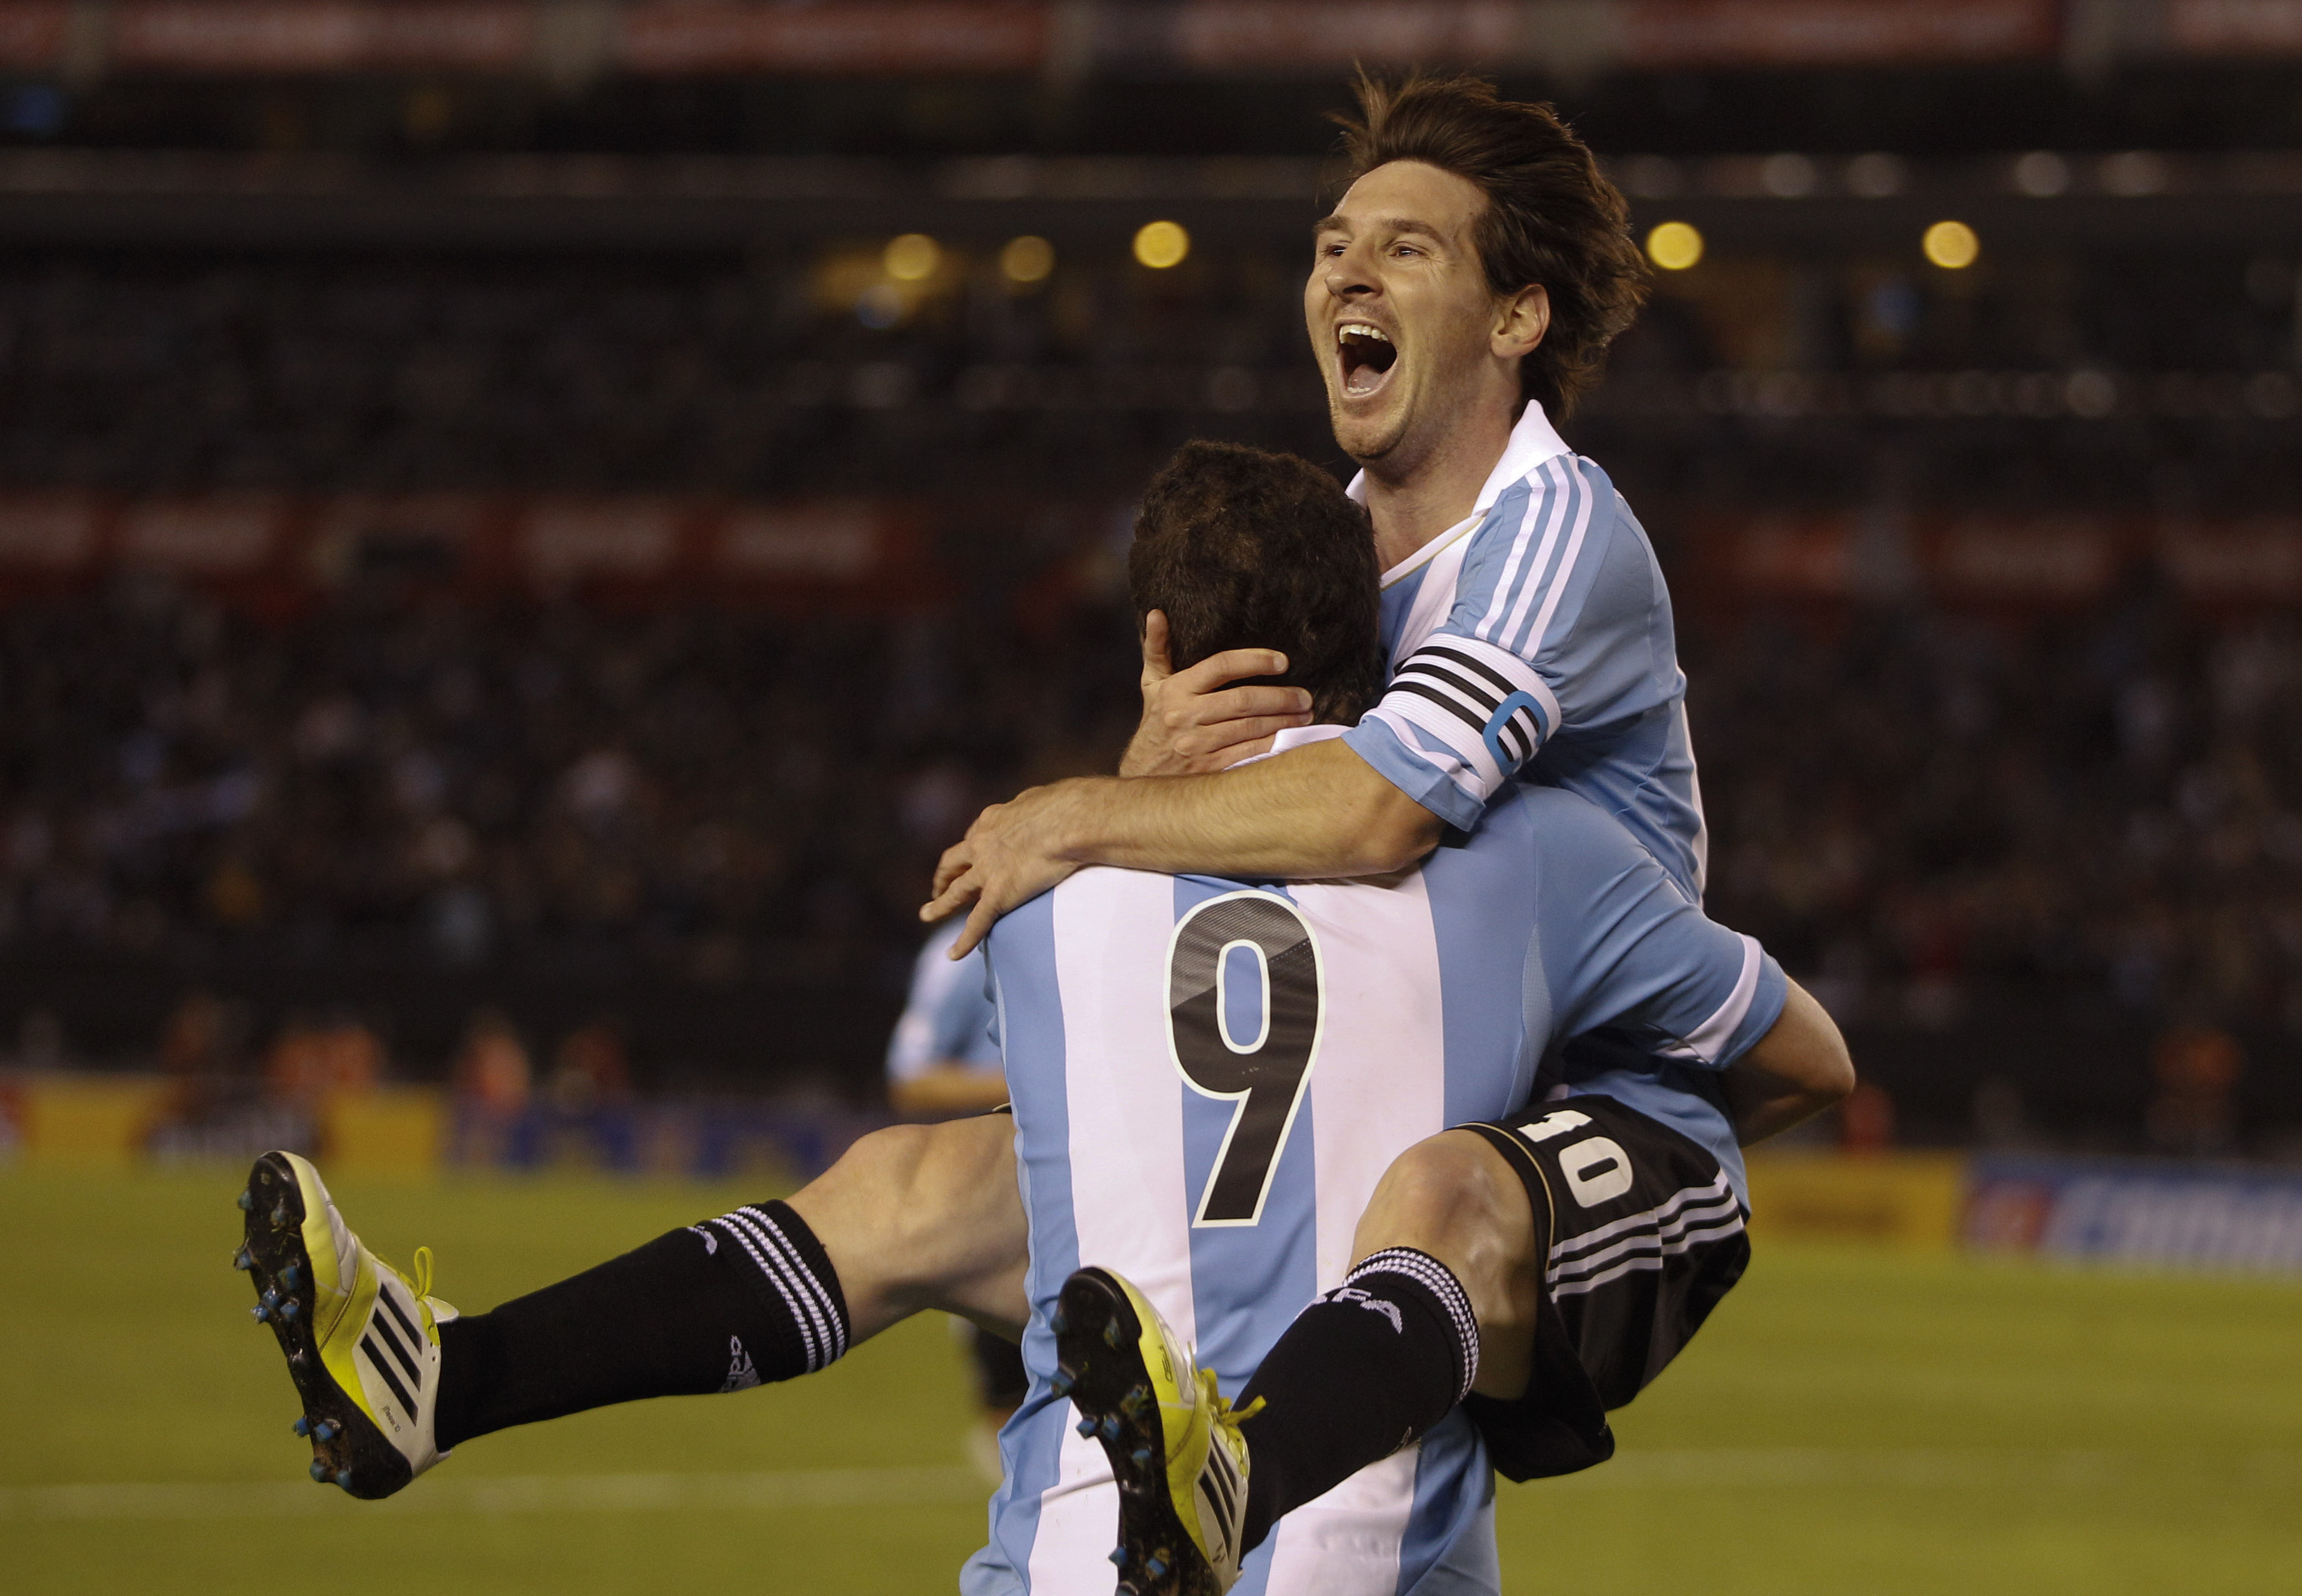 Snart blir det du som får bära på ett litet knyte i armarna Messi.